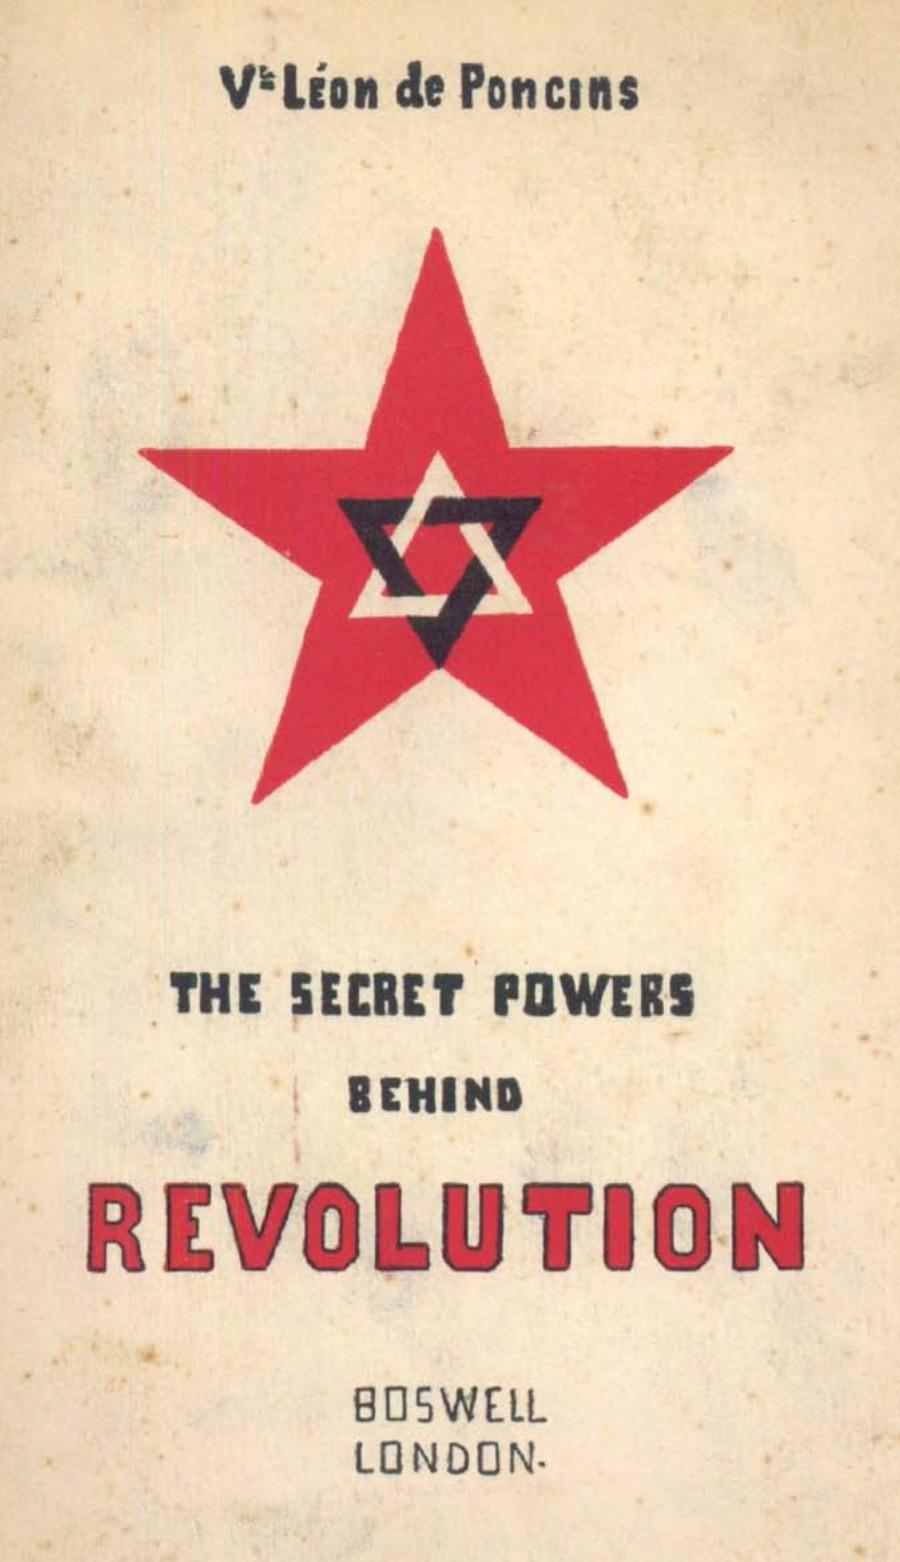 The Secret Powers Behind the Revolution (1929) by Vicomte Leon de Poncins